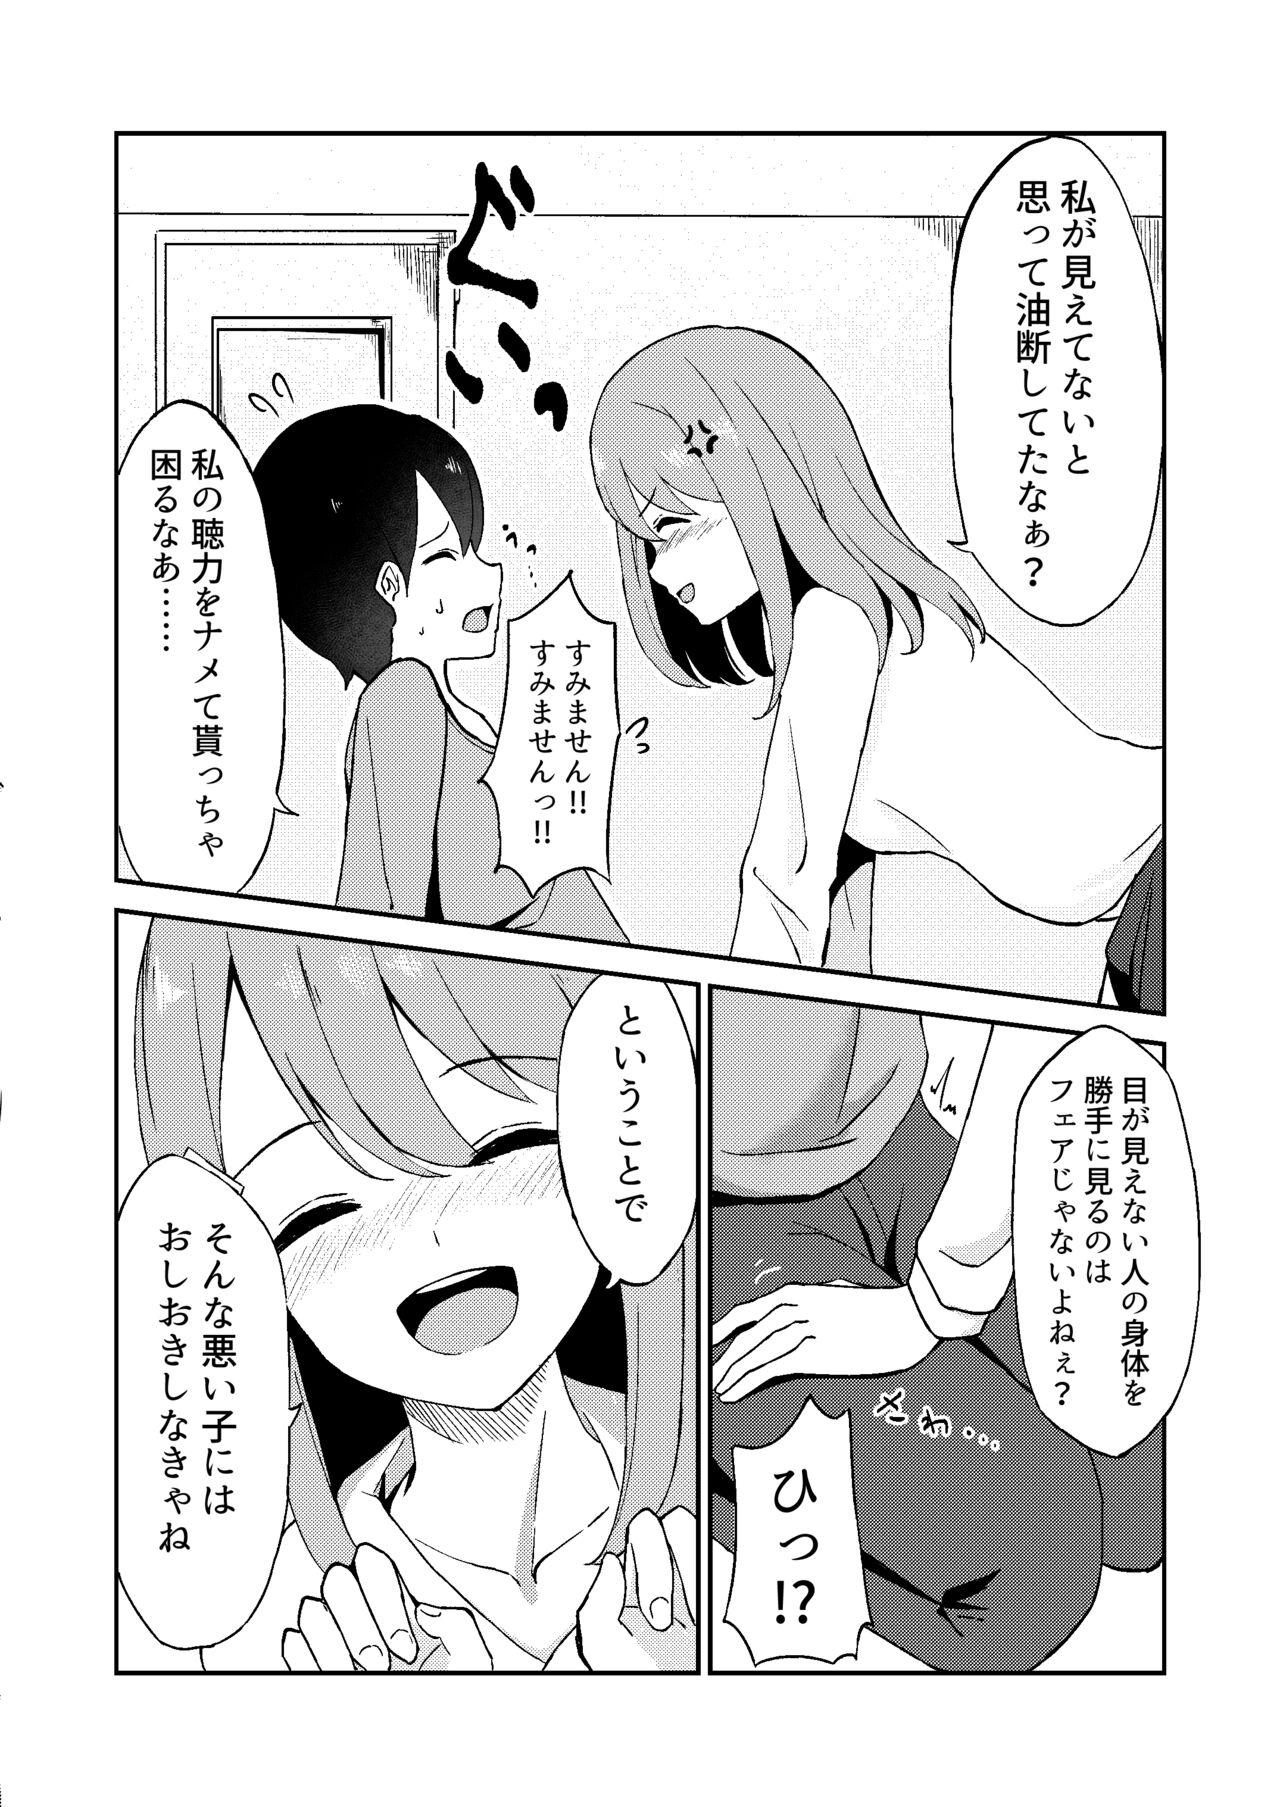 Strap On Kimi ga Mienakutatte - Original Dorm - Page 8